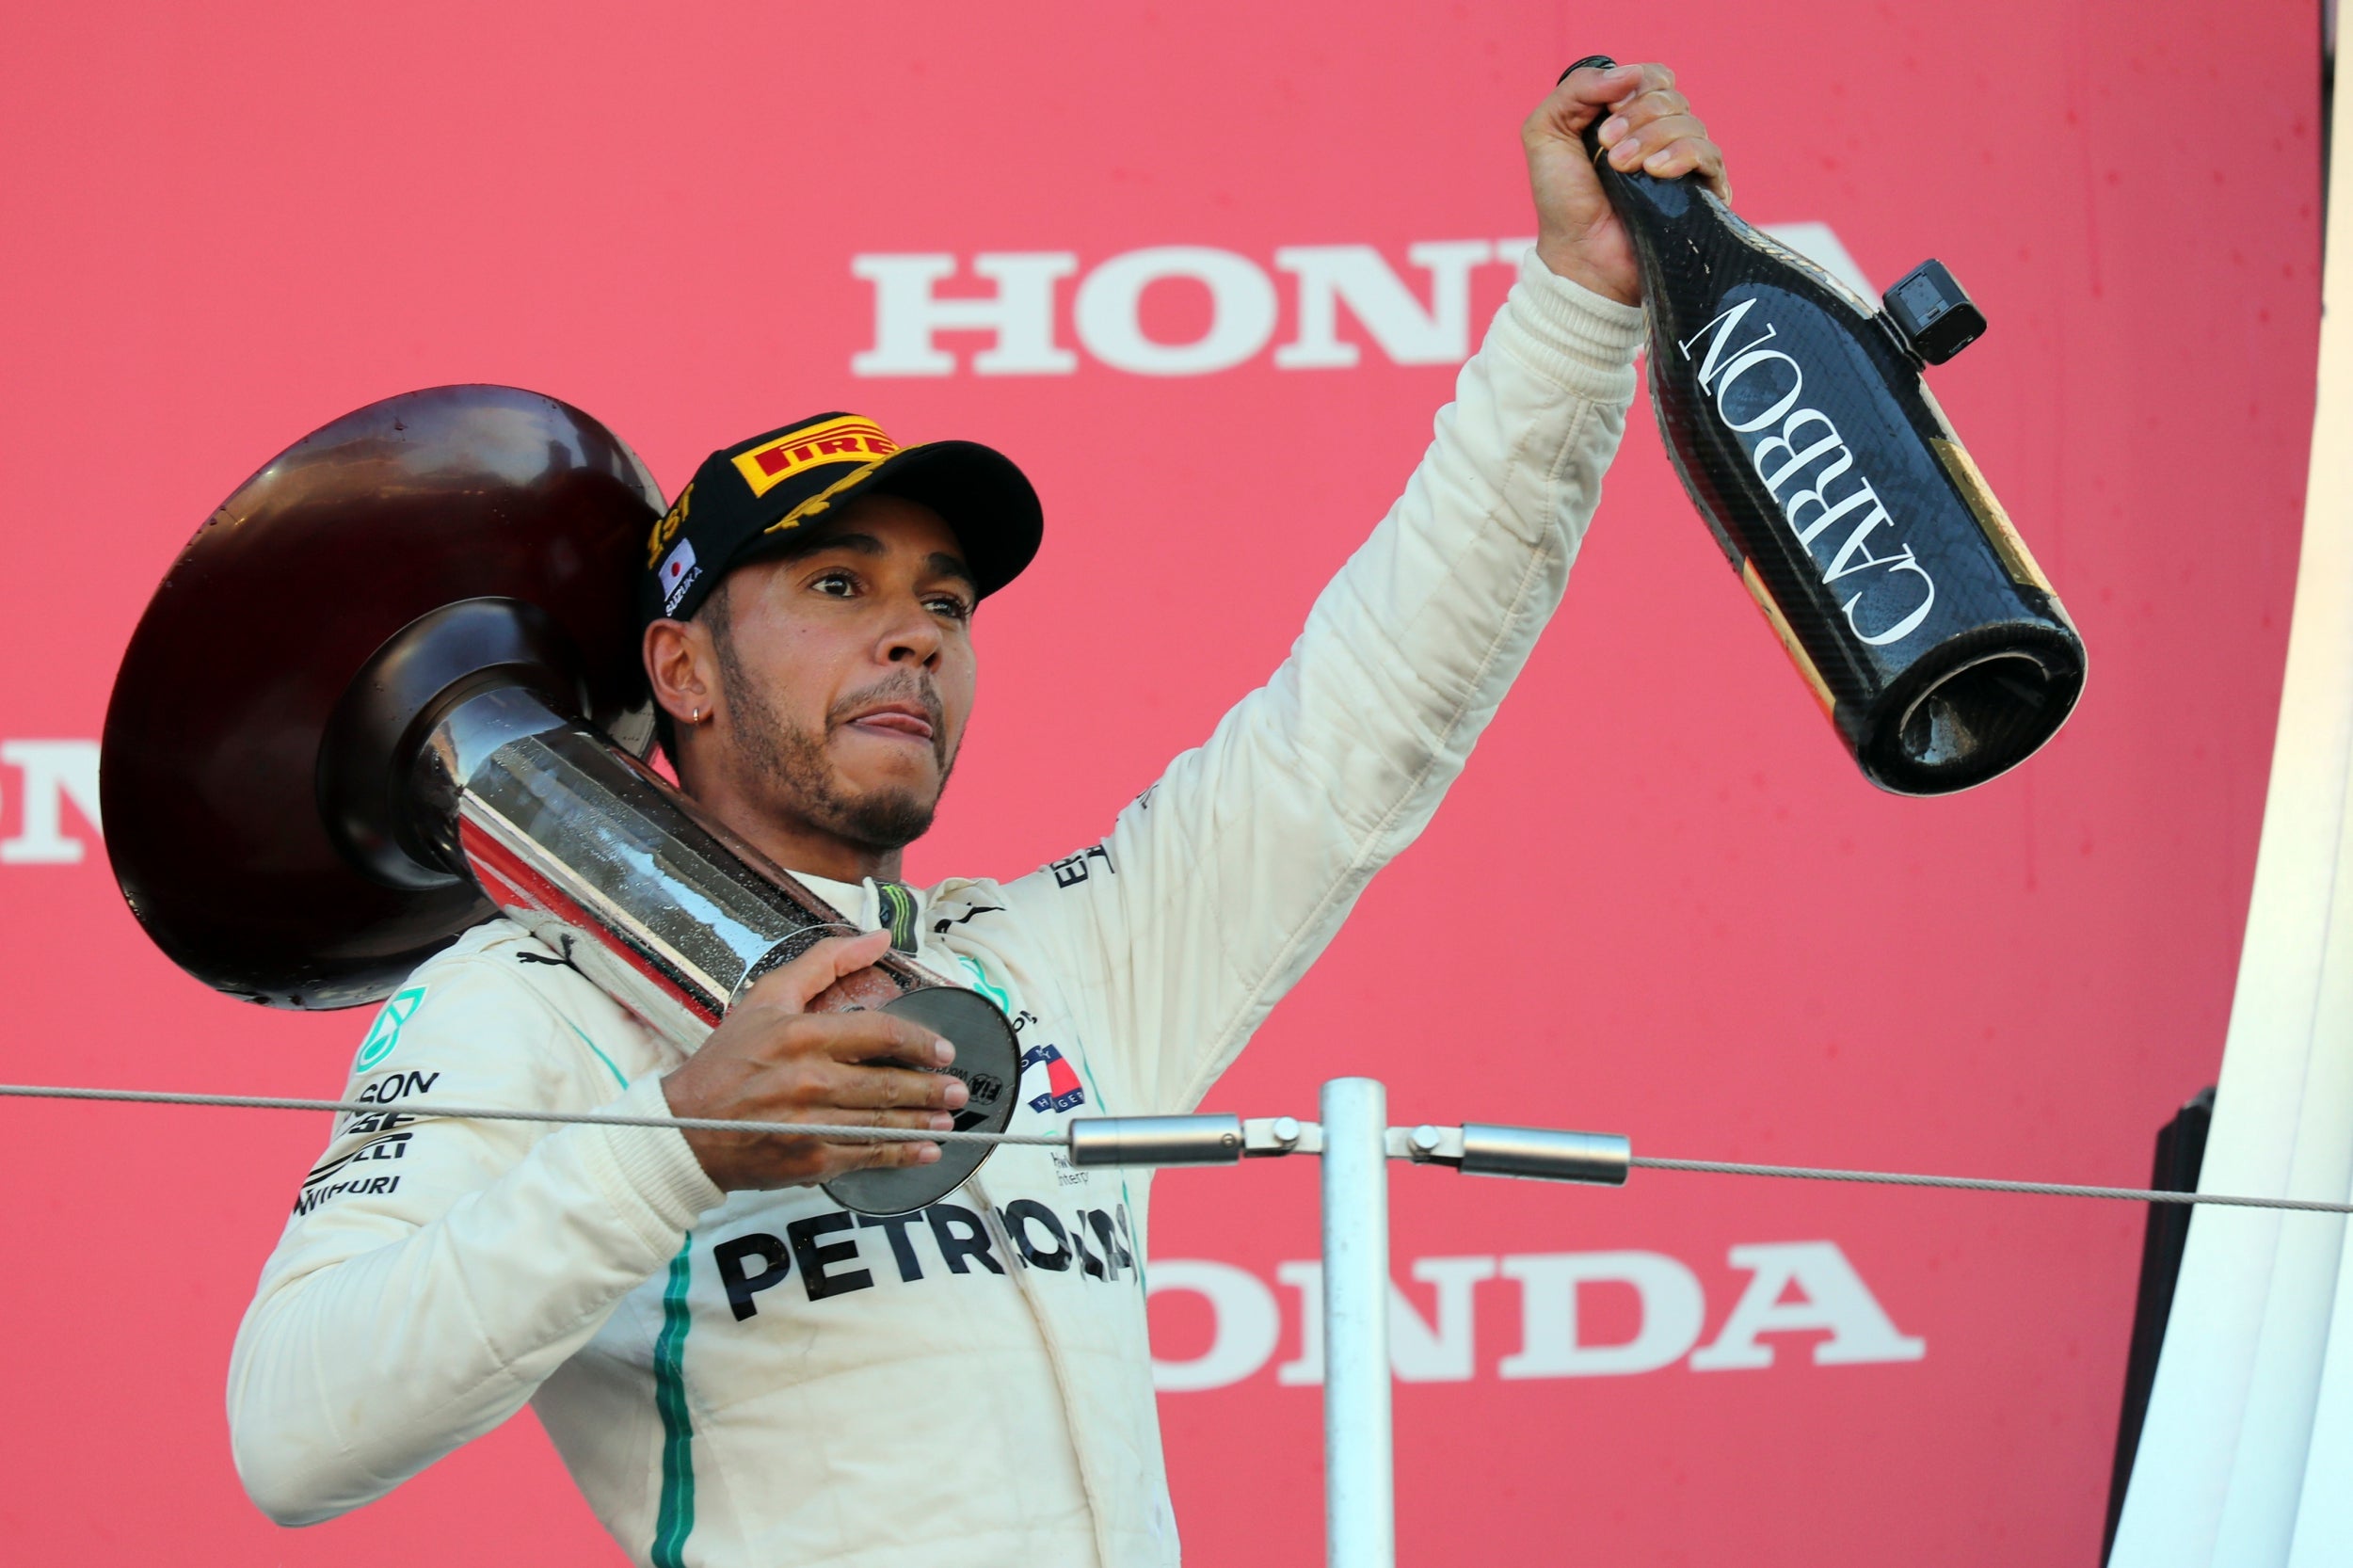 Hamilton has won the last four races